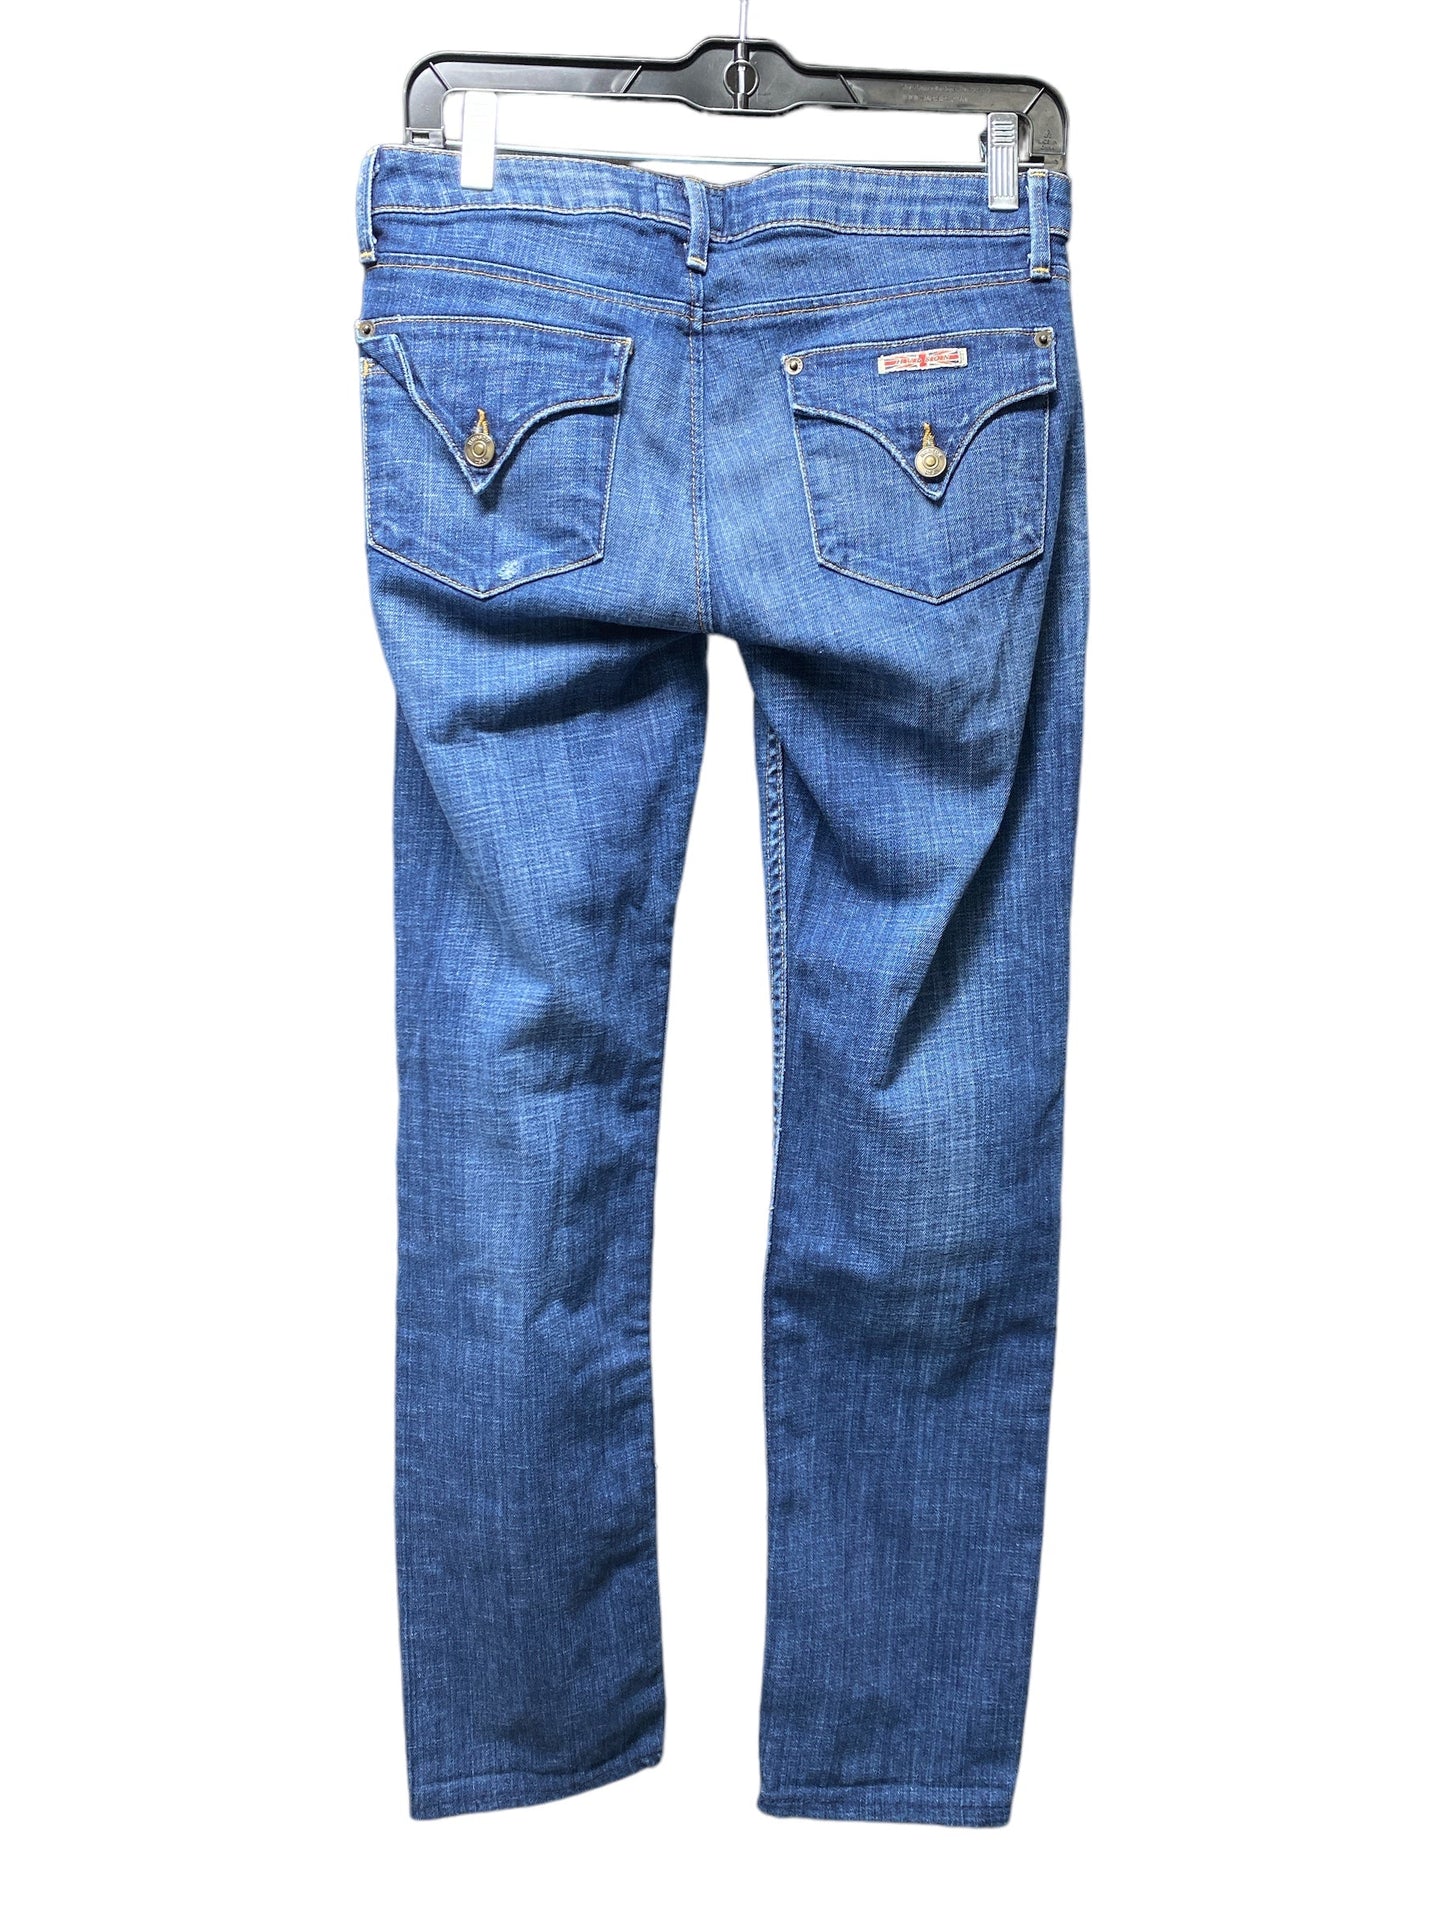 Blue Jeans Designer Hudson, Size 2